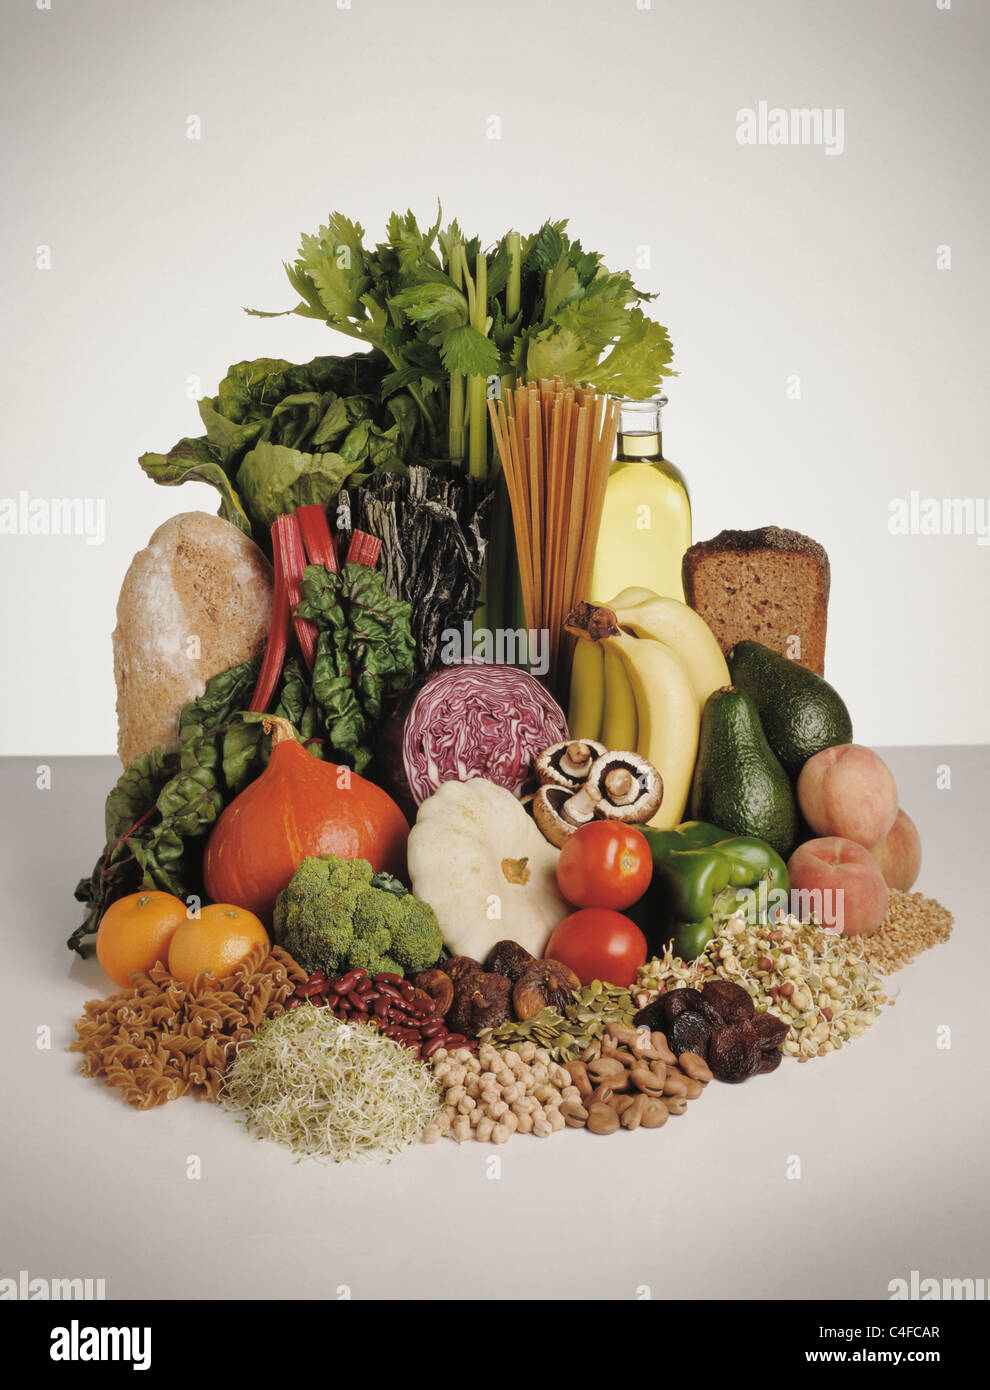 Visualizzazione dei cibi sani, frutta e verdura, legumi, pasta e pane. Foto Stock